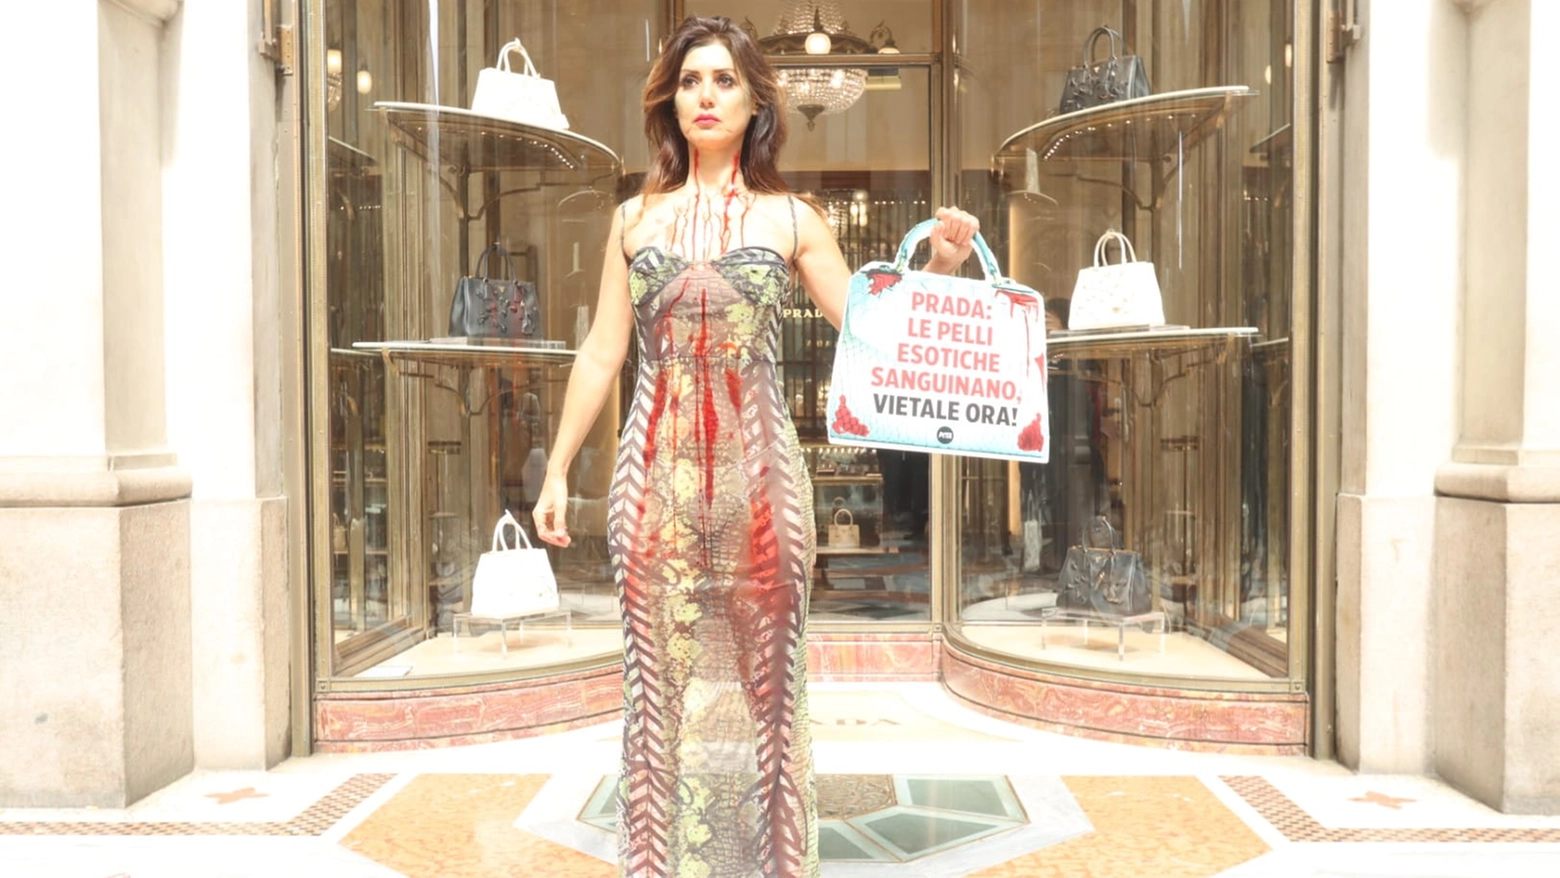 La protesta di Daniela Martani davanti al negozio di Prada in Galleria Vittorio Emanuele (Foto Salmoirago)